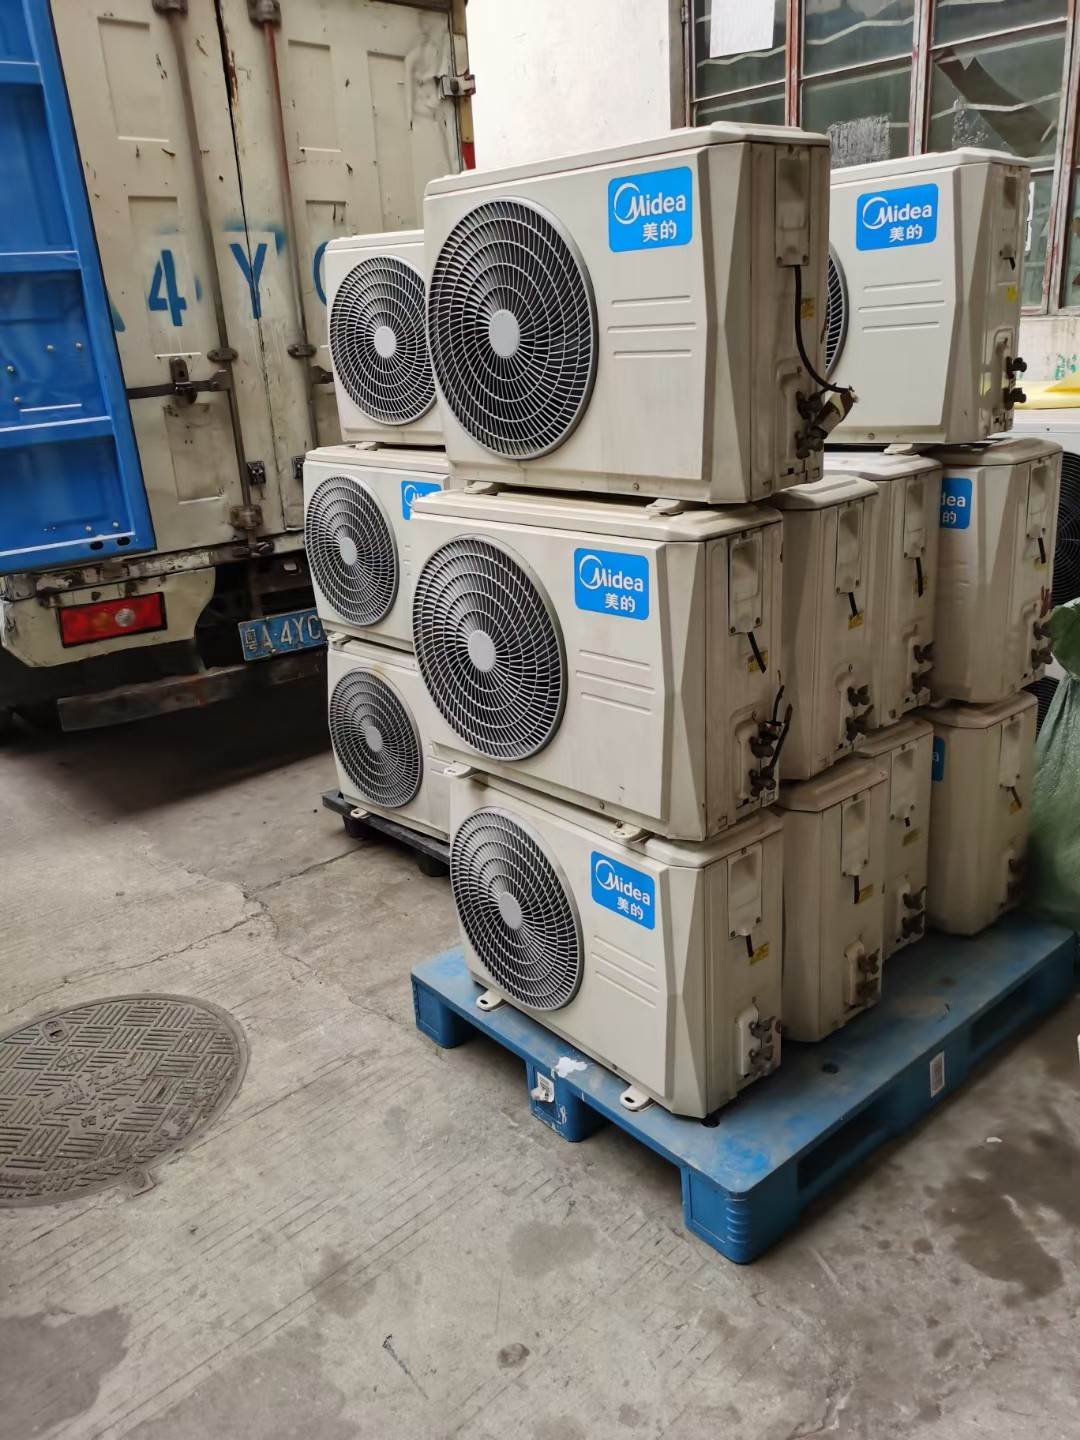 肇庆端州区空调回收－淘汰空调回收－螺杆冷水机组回收